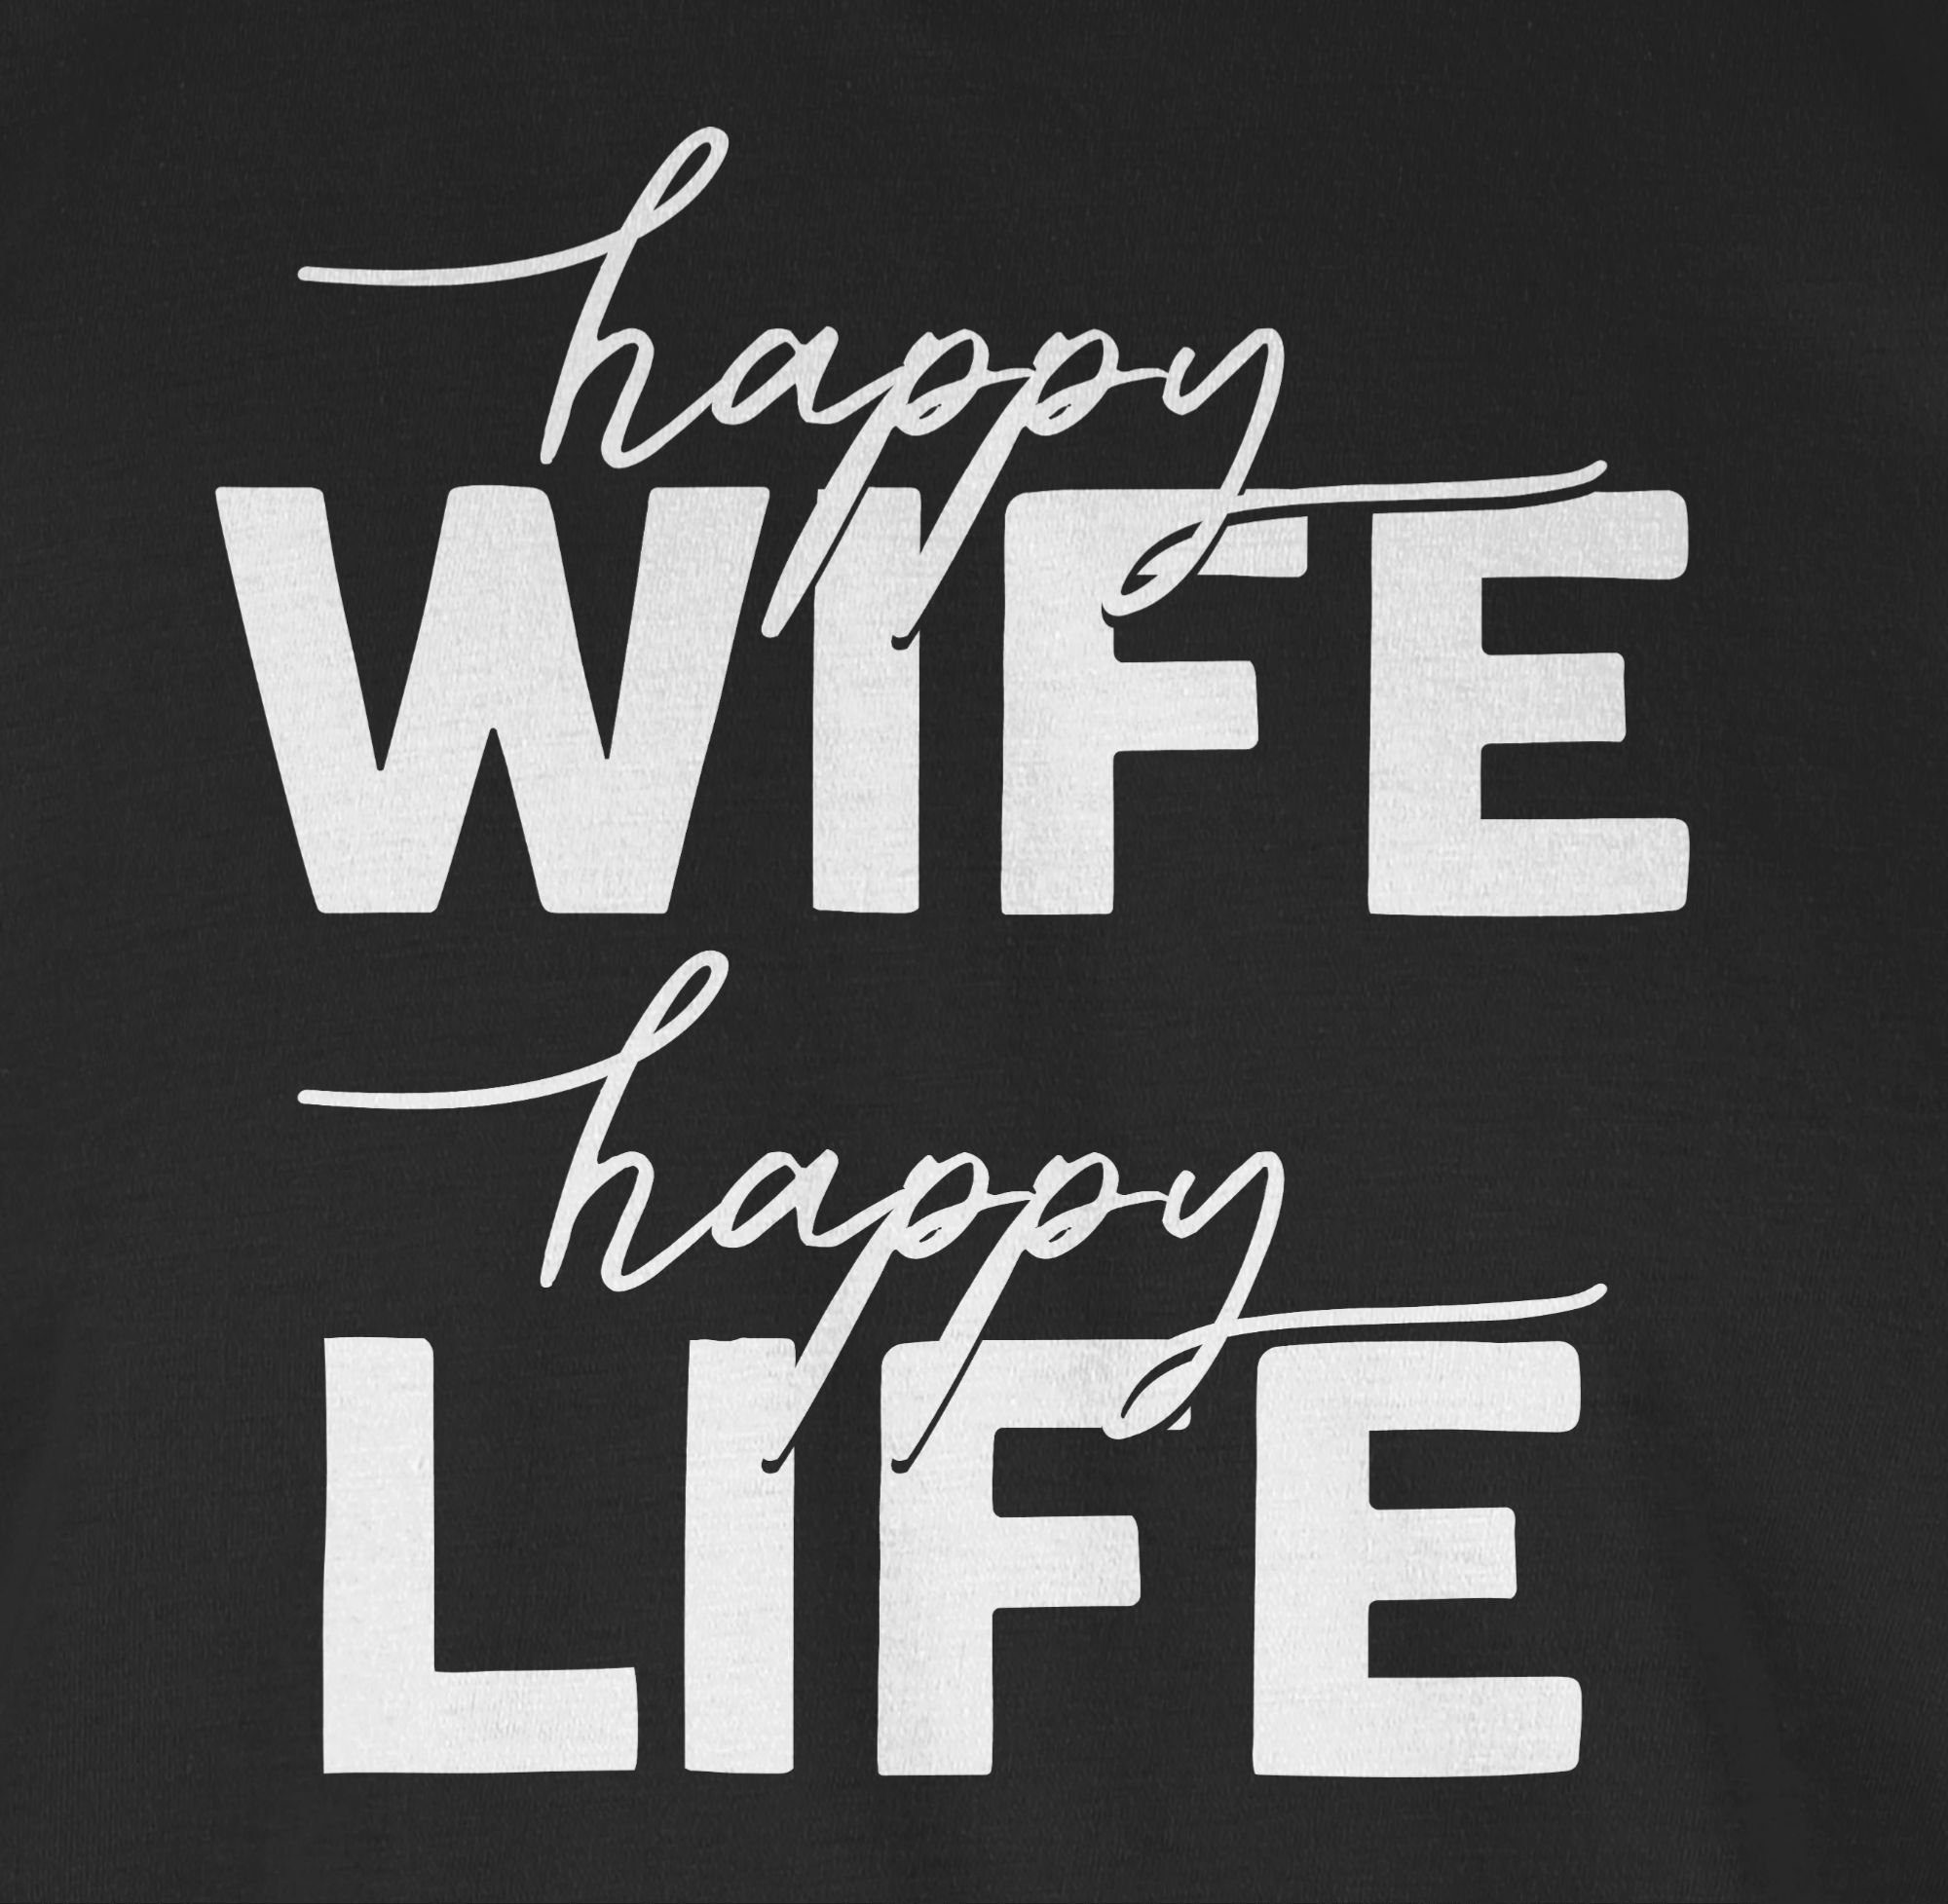 Sprüche Shirtracer Schwarz T-Shirt Combi Happy Wife mit Life 03 Lettering weiß Spruch Happy Statement